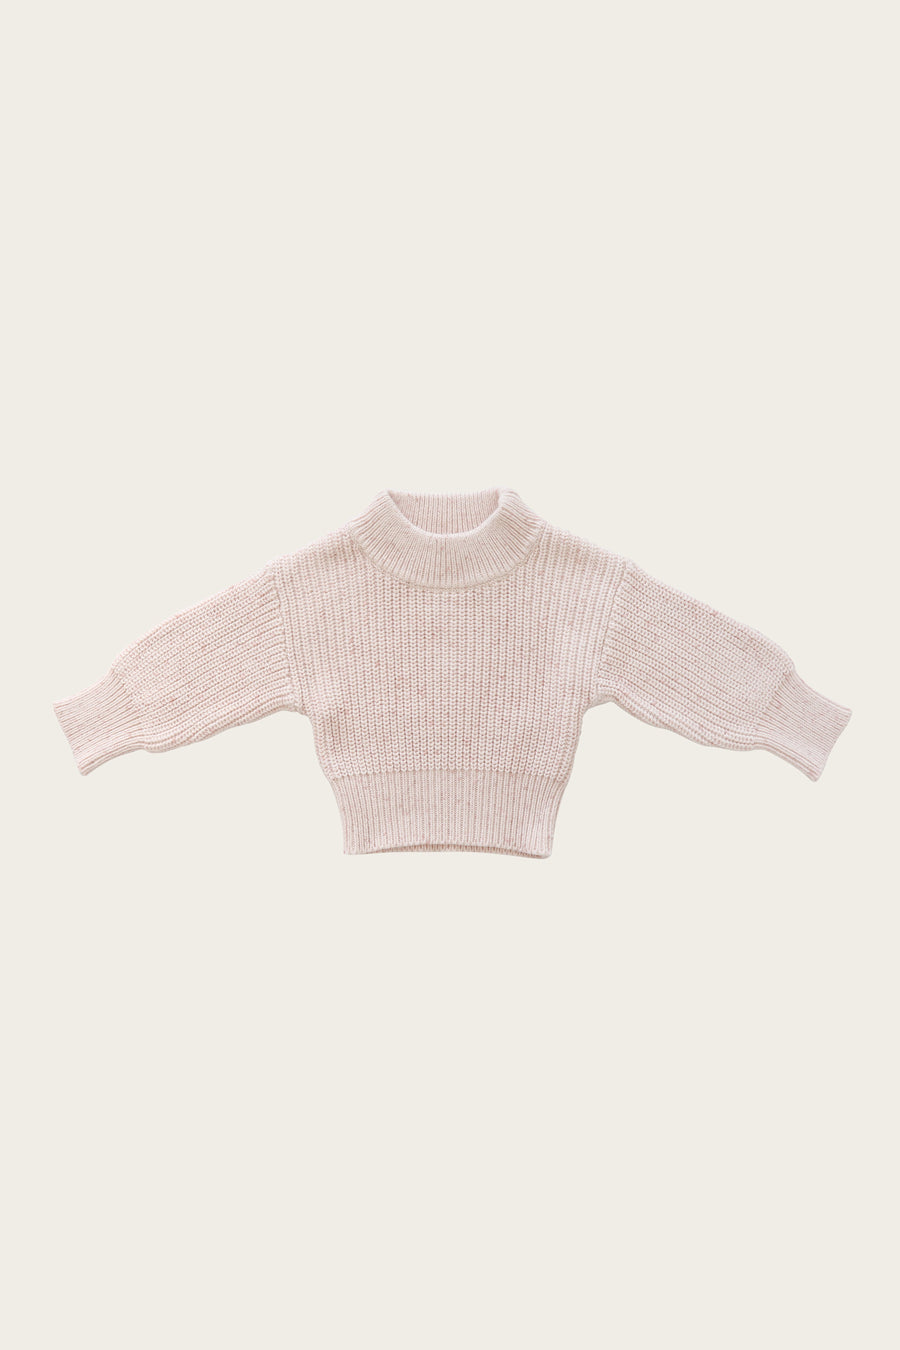 Jamie Kay- Morgan Knit Sweater- Butterfly Fleck